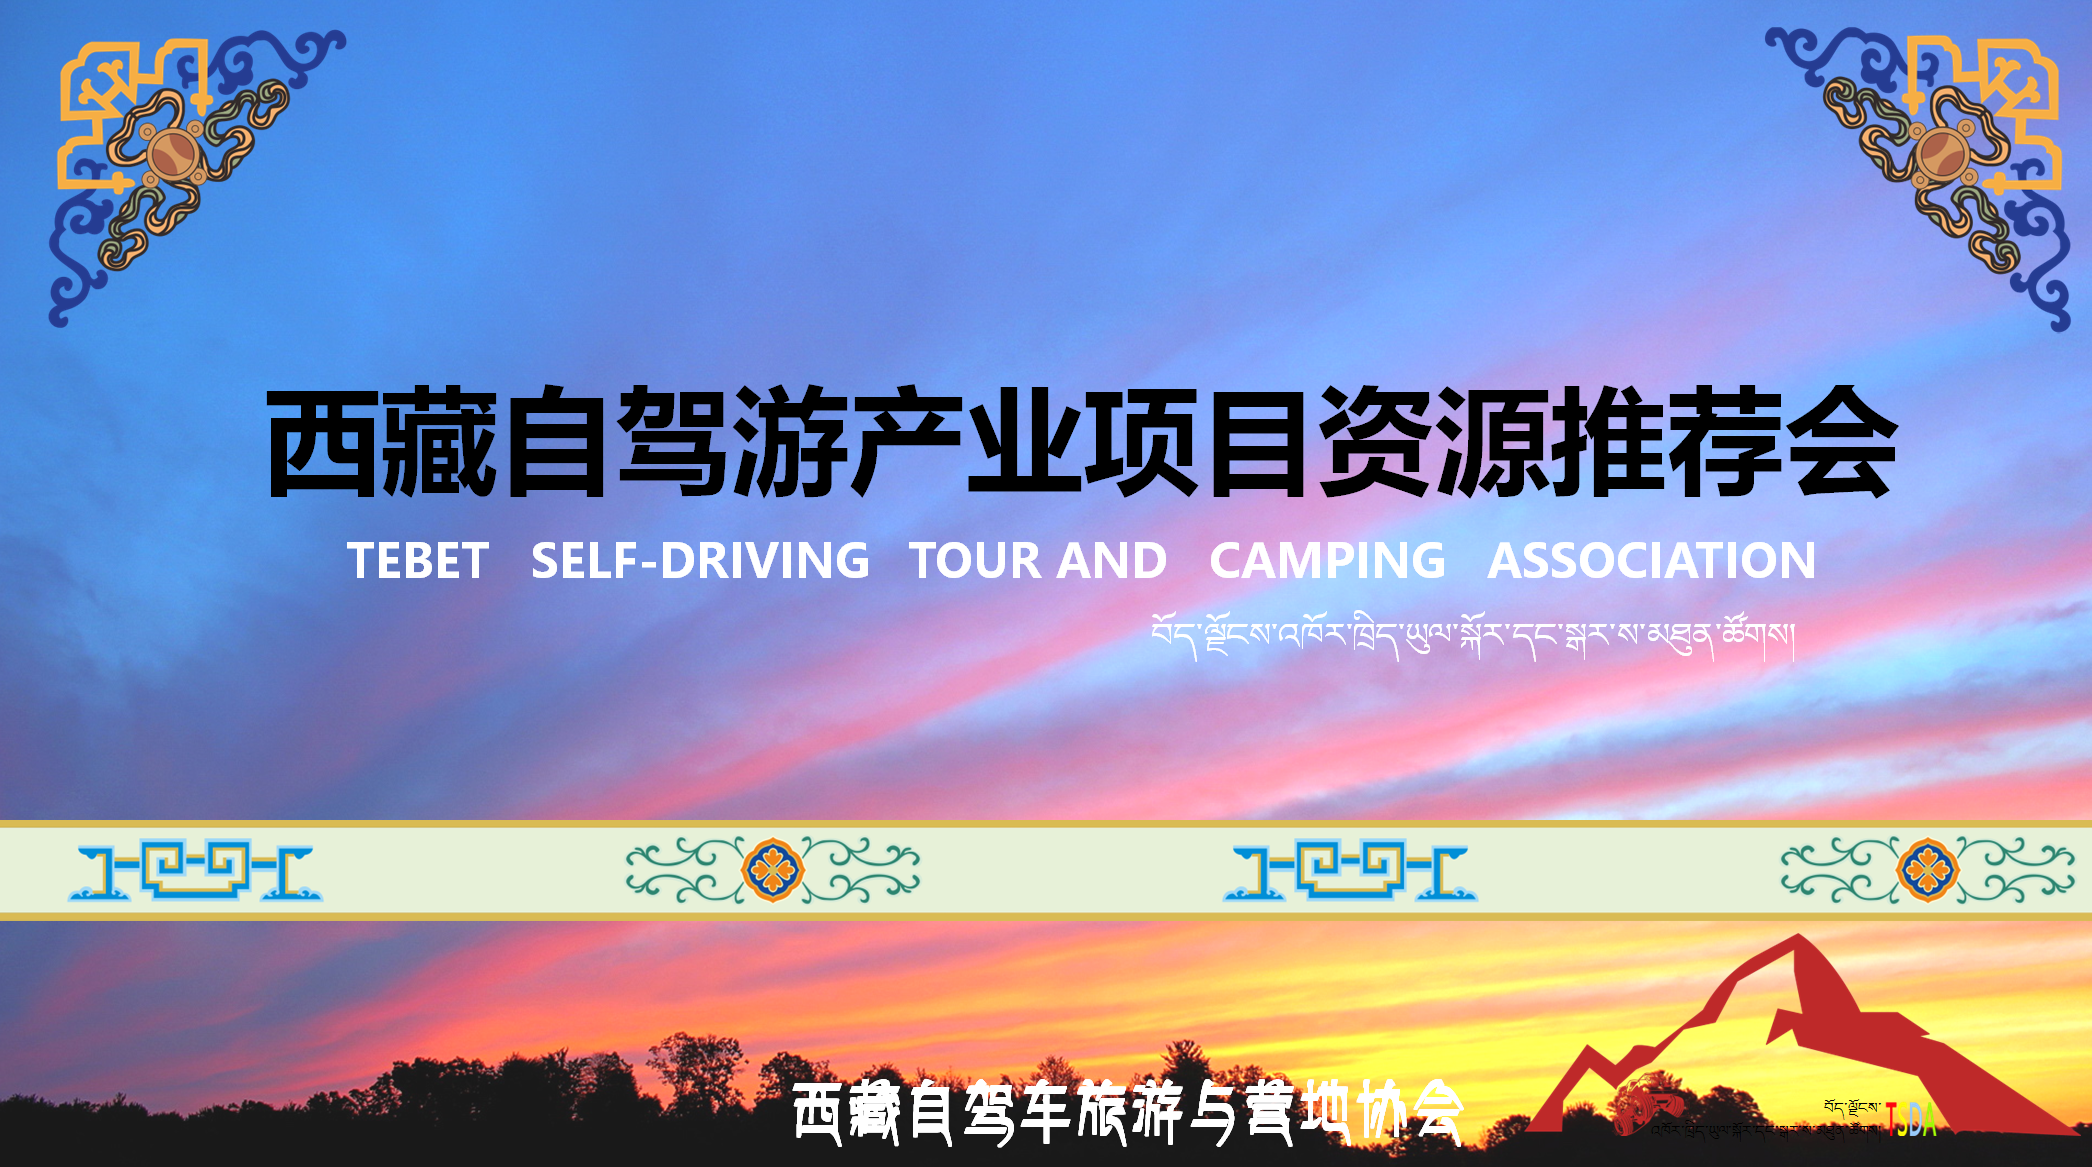 【协会动态】2016西藏自驾游产业项目资源巡回推荐会